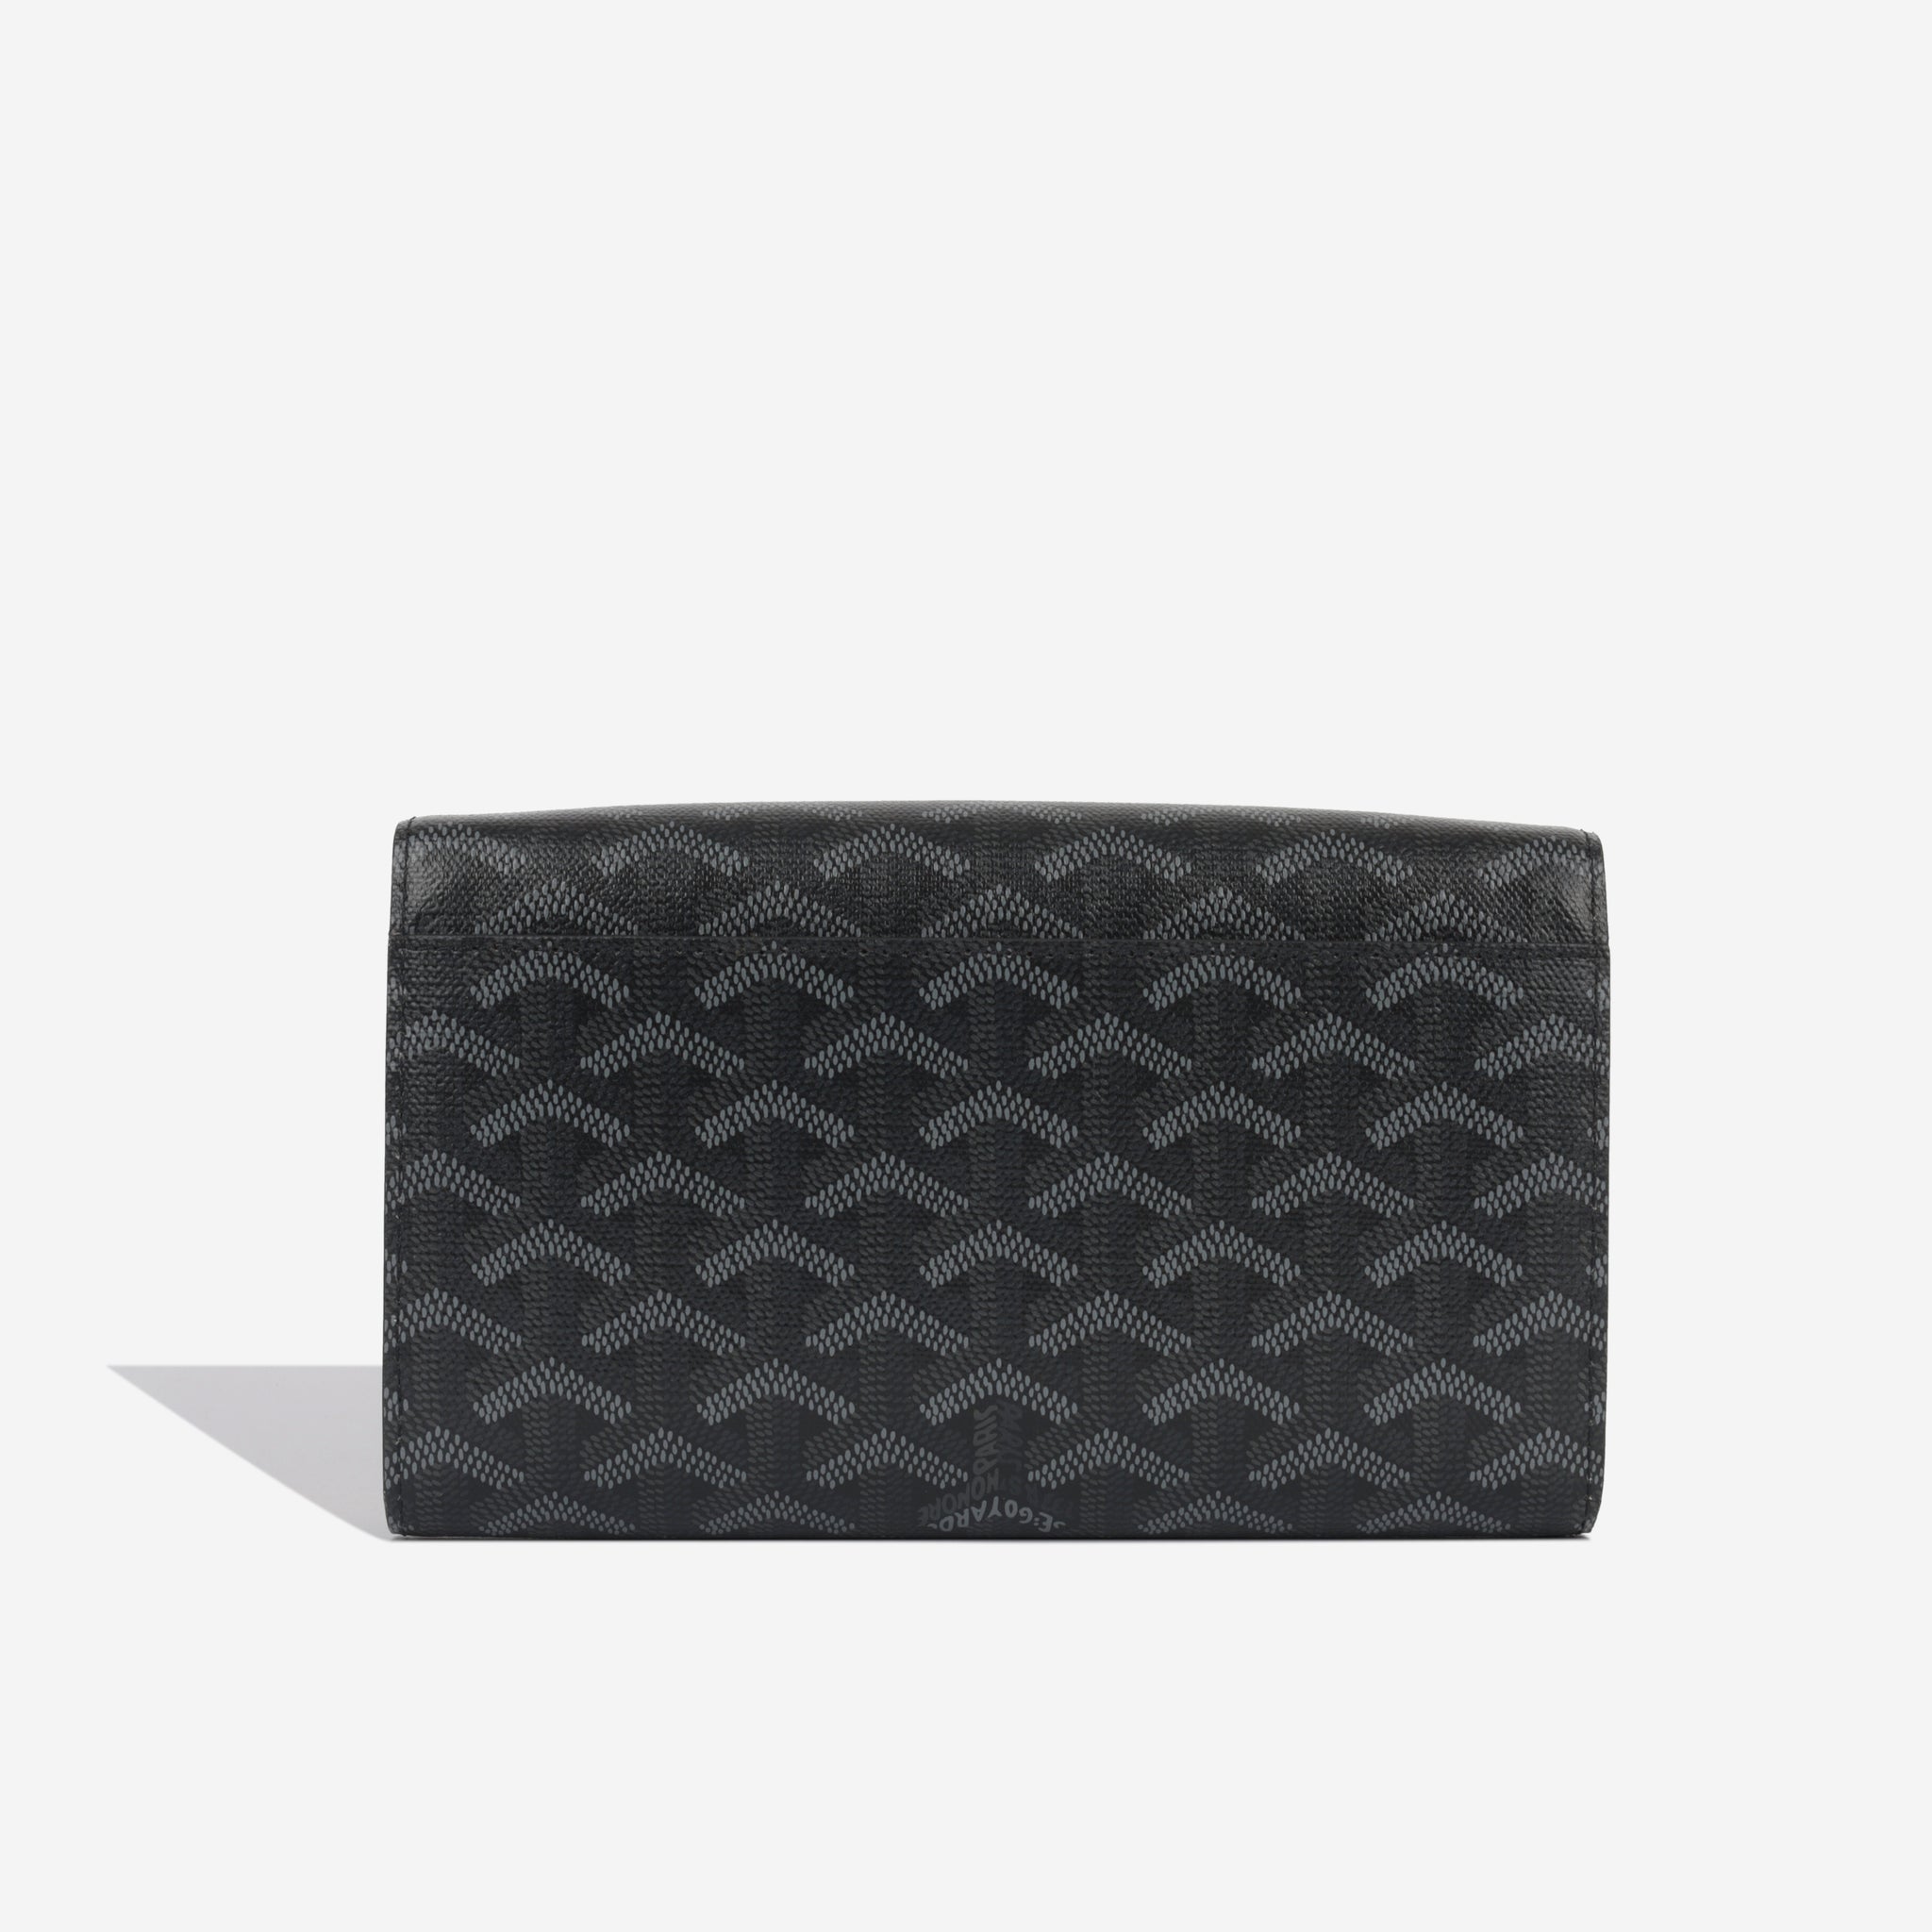 NEW Goyard Varenne Continental Wallet Crossbody Black Bag Removable Strap